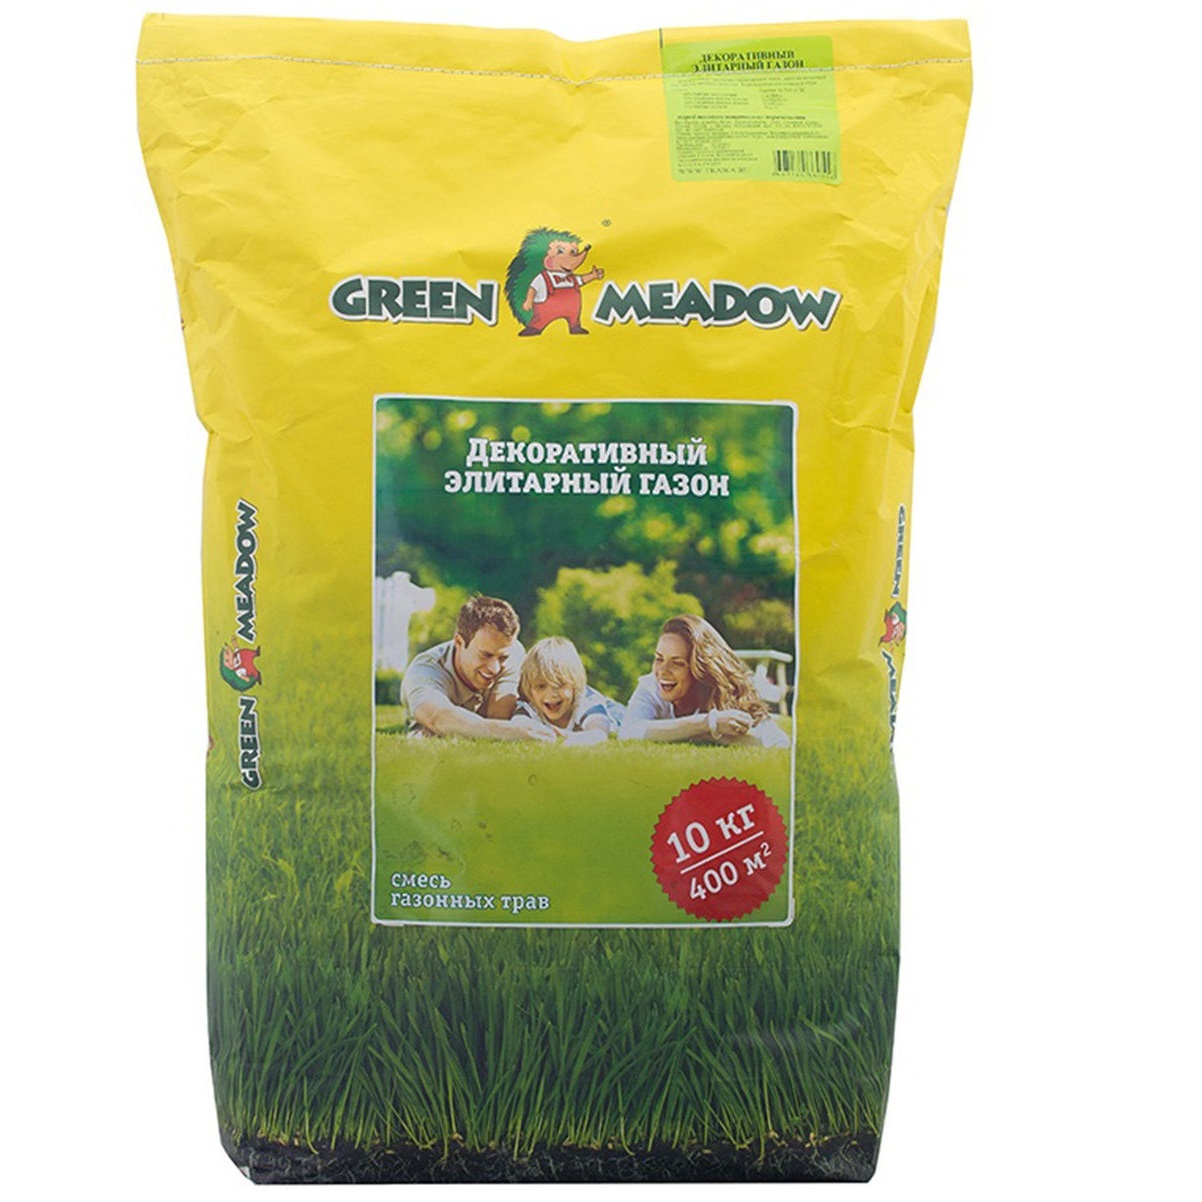 Газон Green Meadow декоративный элитарный 10 кг семена газона green meadow декоративный элитарный газон 2 шт по 10 кг